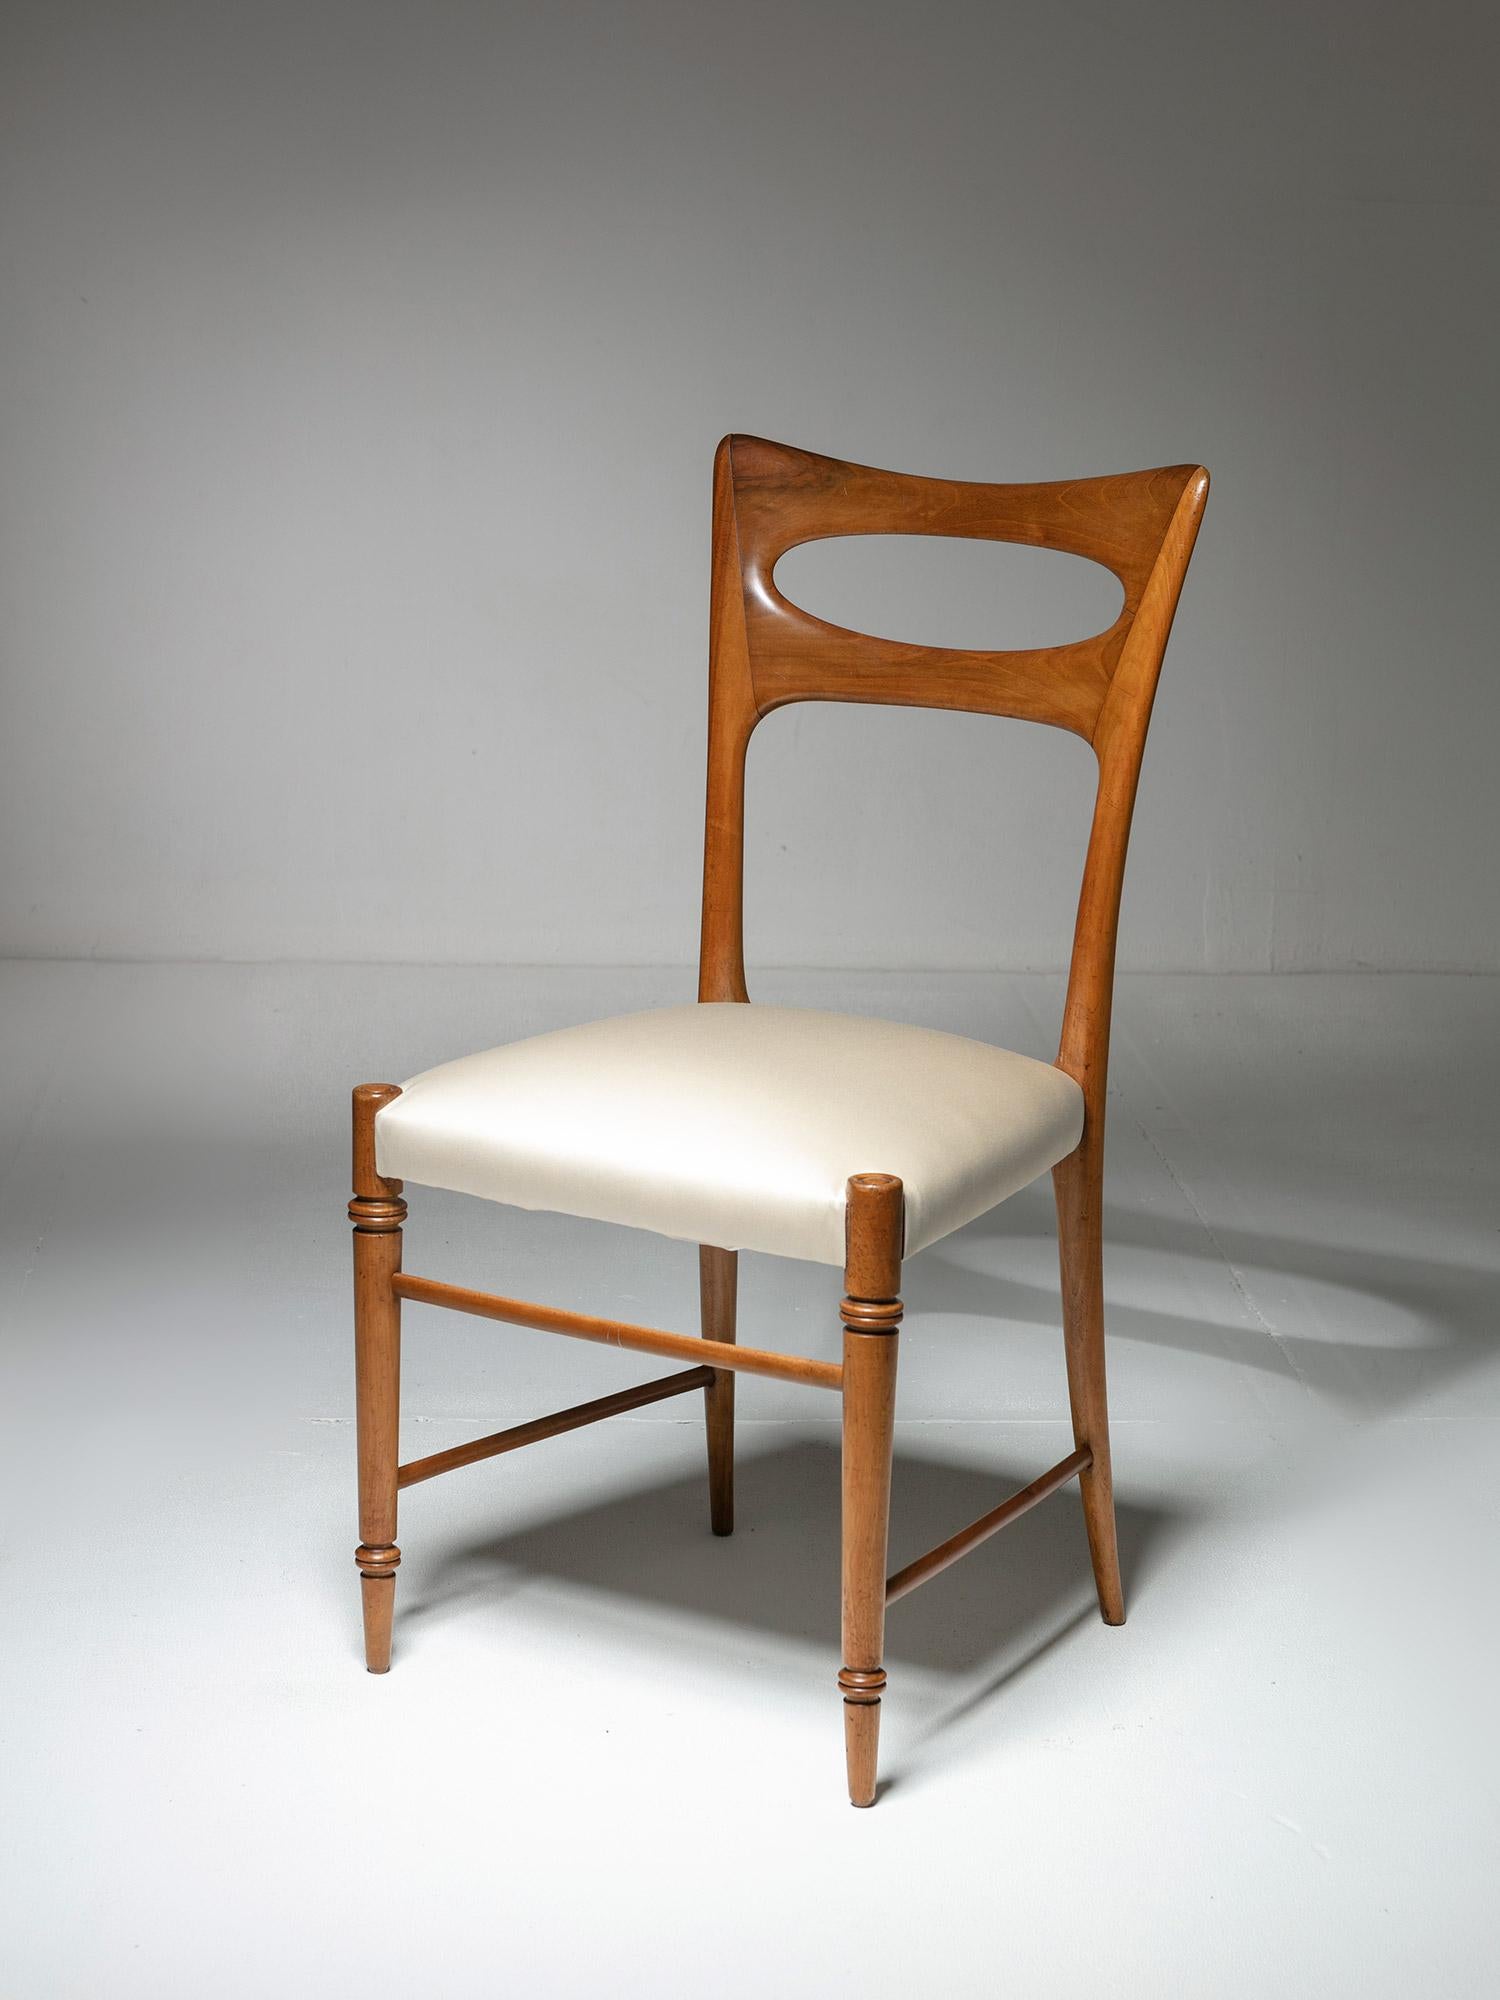 Rare chaise de Paolo Buffa.
Structure en bois de cerisier et siège nouvellement rembourré.